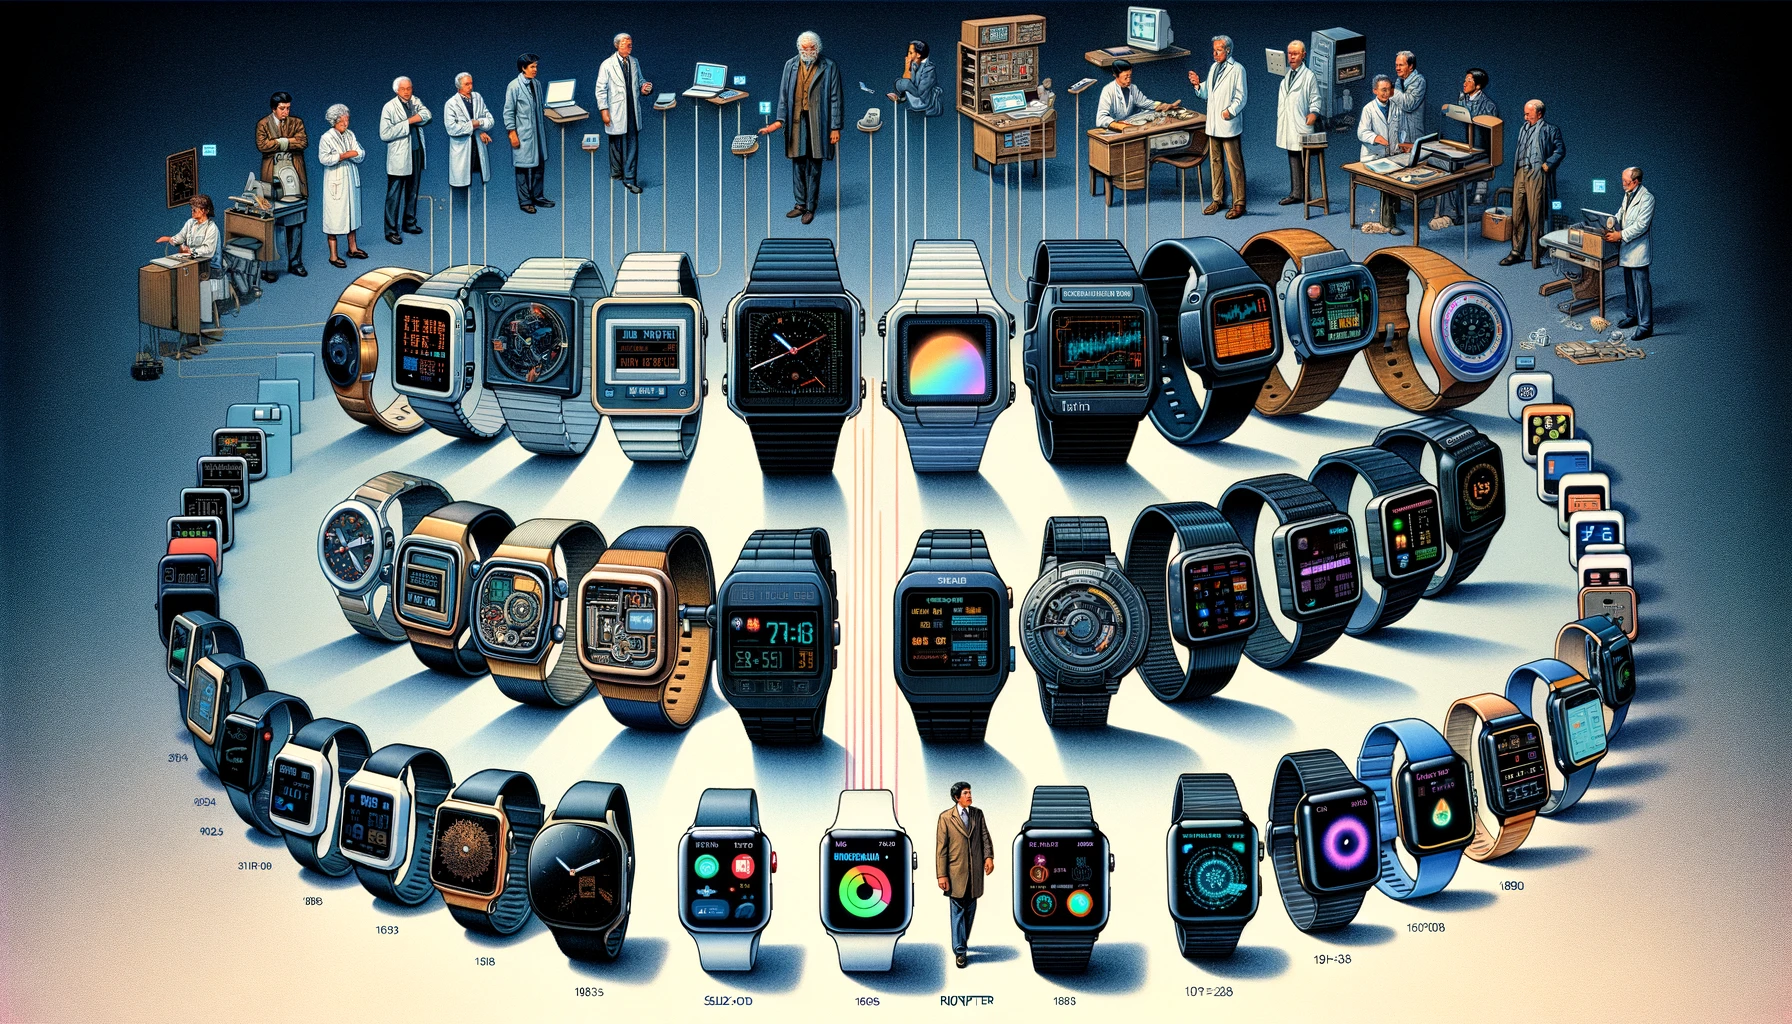 Evolution der Smartwatch von ihren frühen Prototypen bis zu den heutigen fortschrittlichen Modellen zeigt